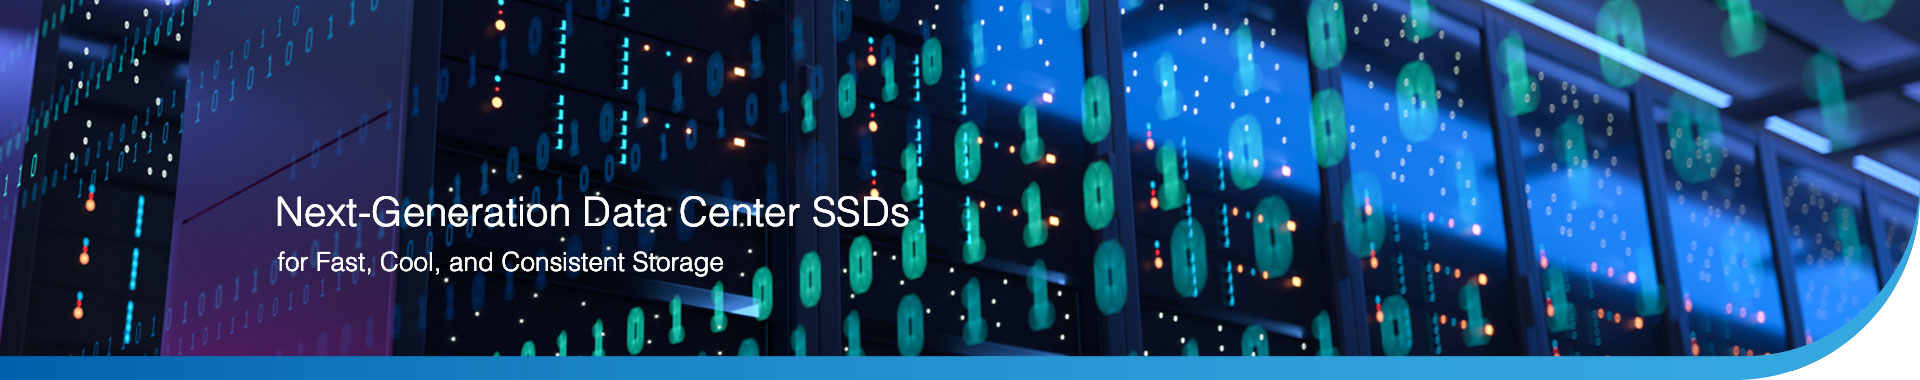 SMART_Modular_DataCenter_SSD